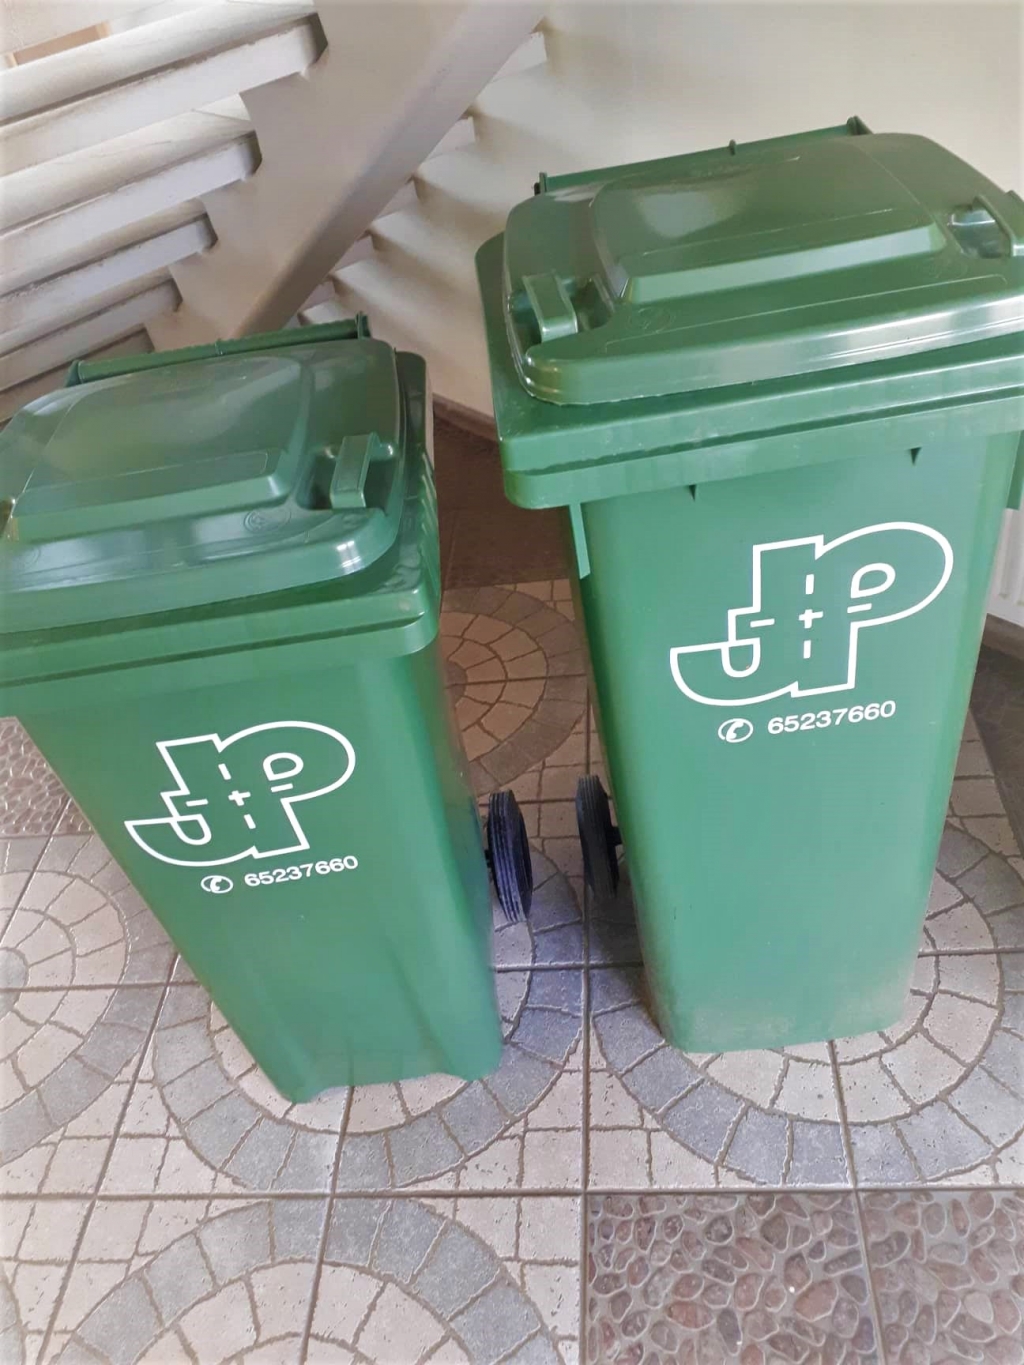 Par sadzīves atkritumu apsaimniekošanu Jēkabpils pilsētas privātmāju iedzīvotājiem